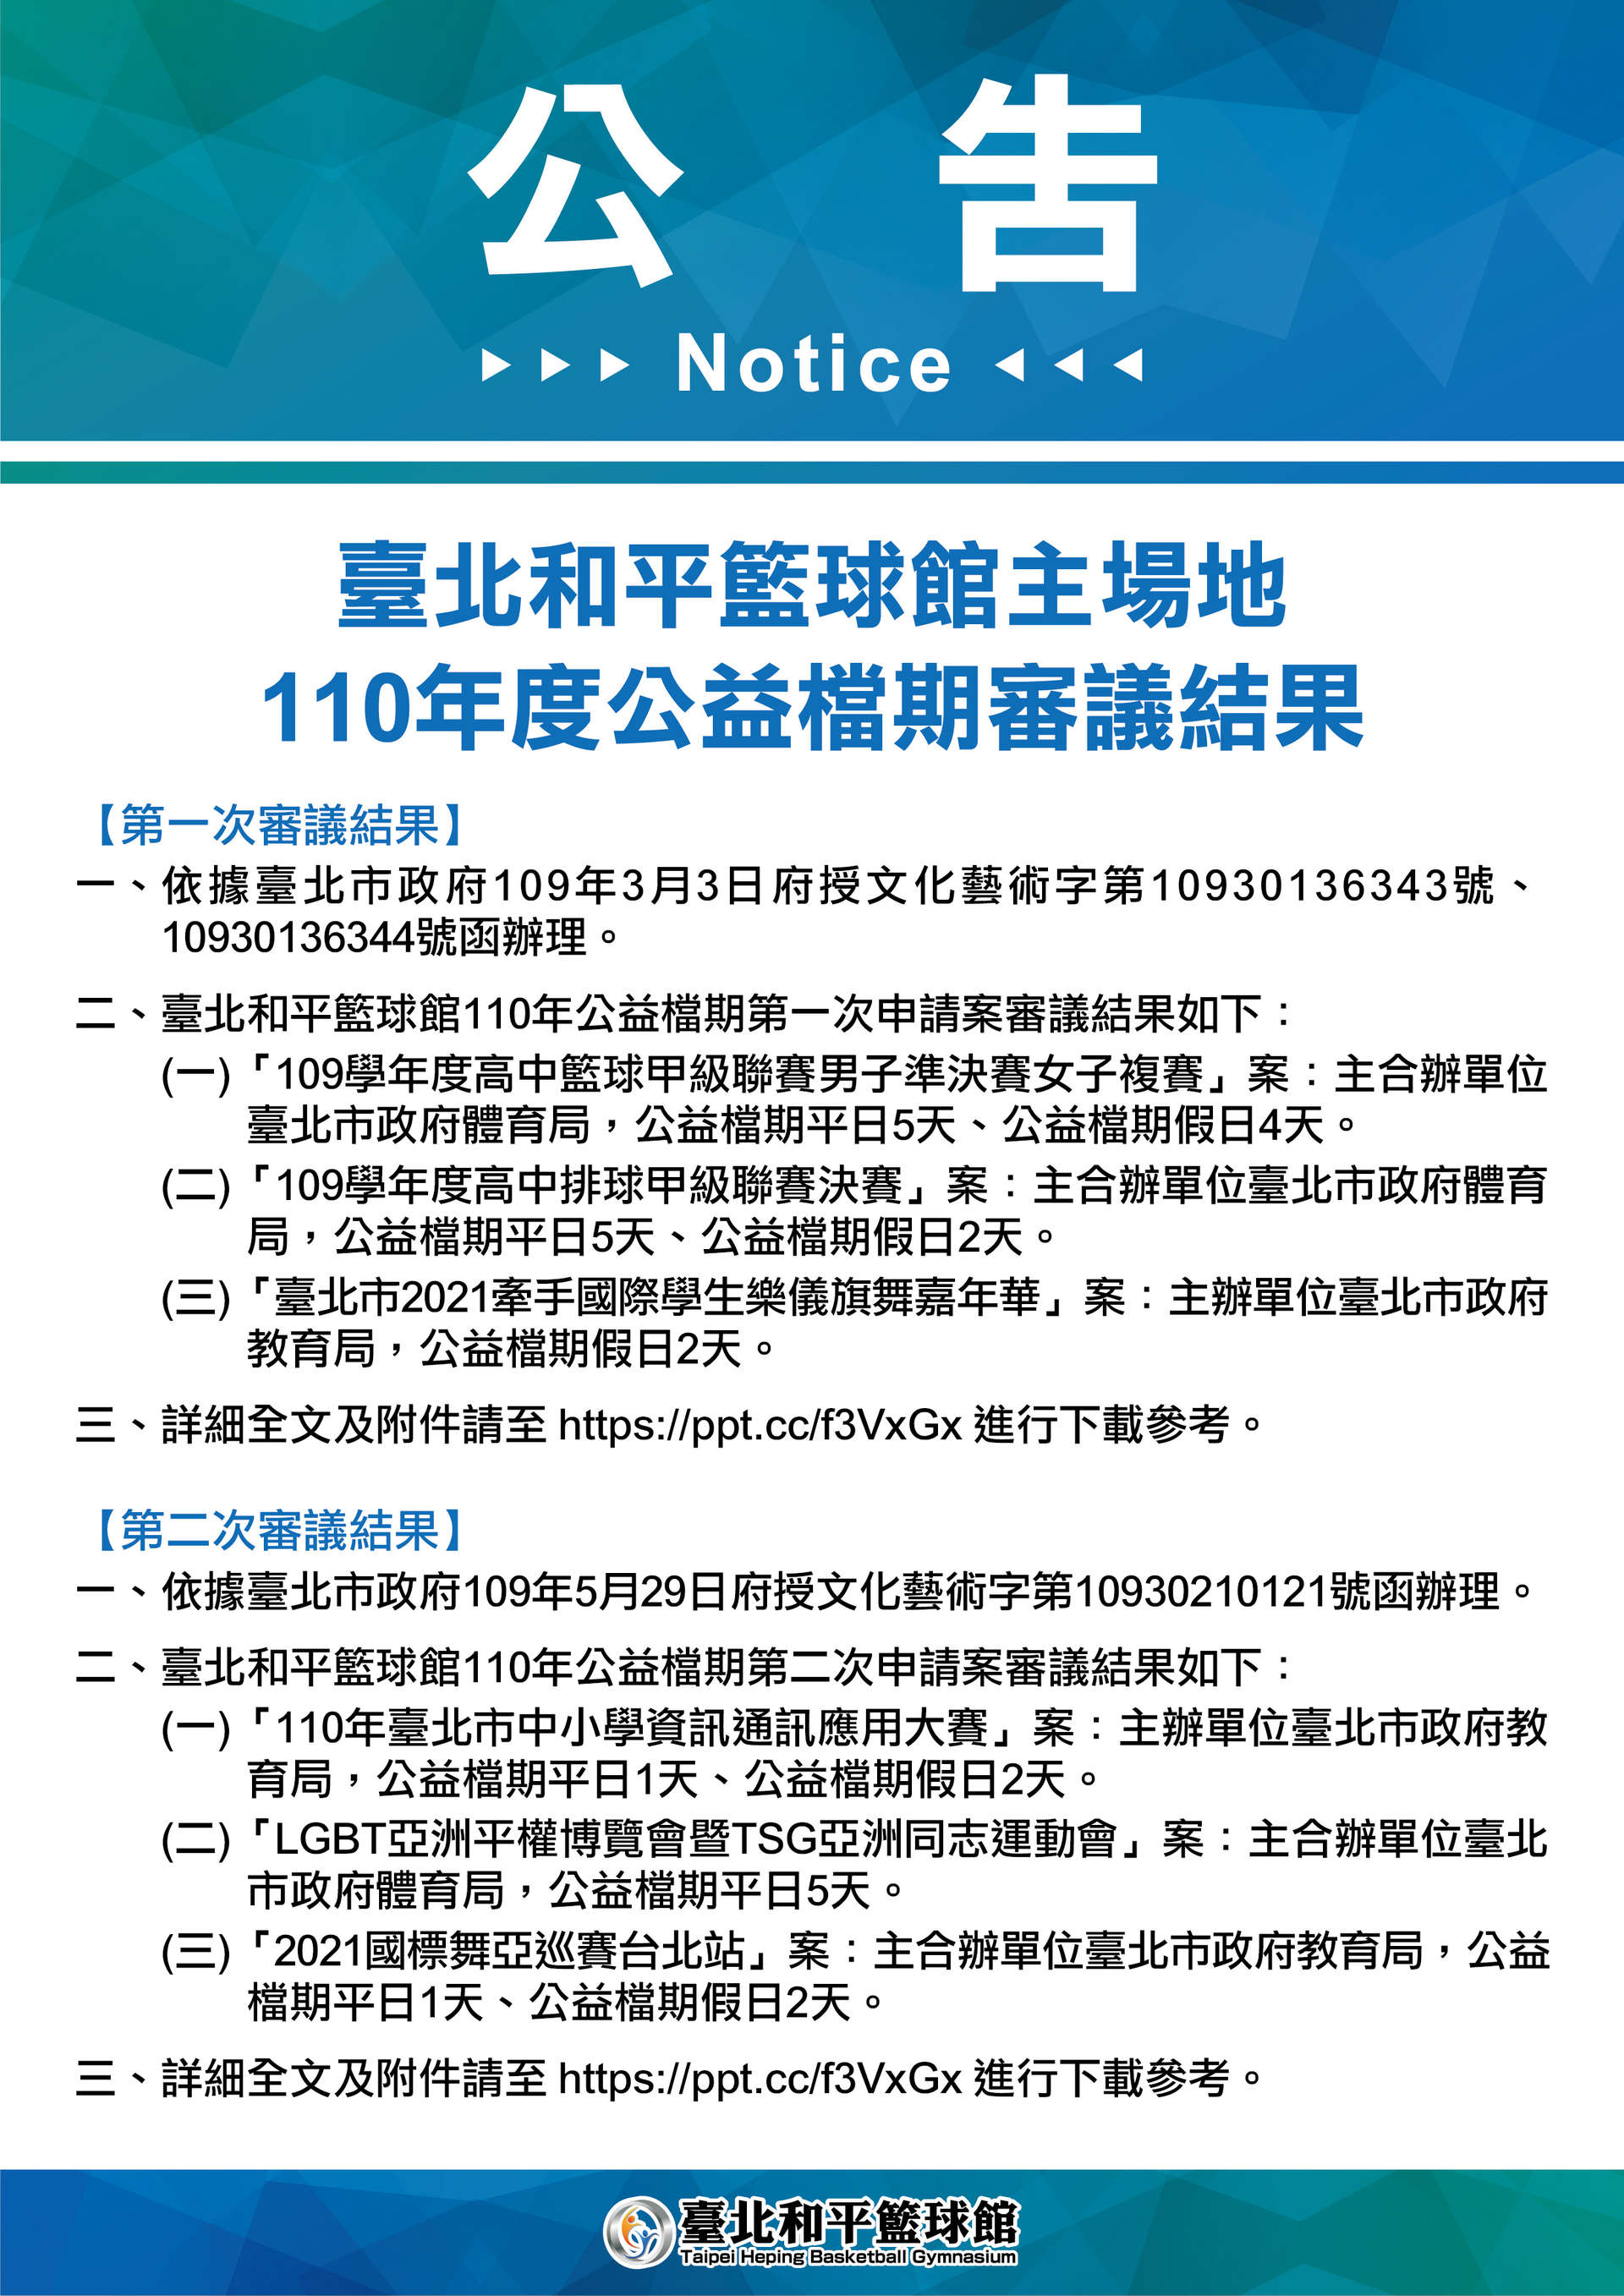 臺北和平籃球館主場地110年度公益檔期審議結果預覽圖